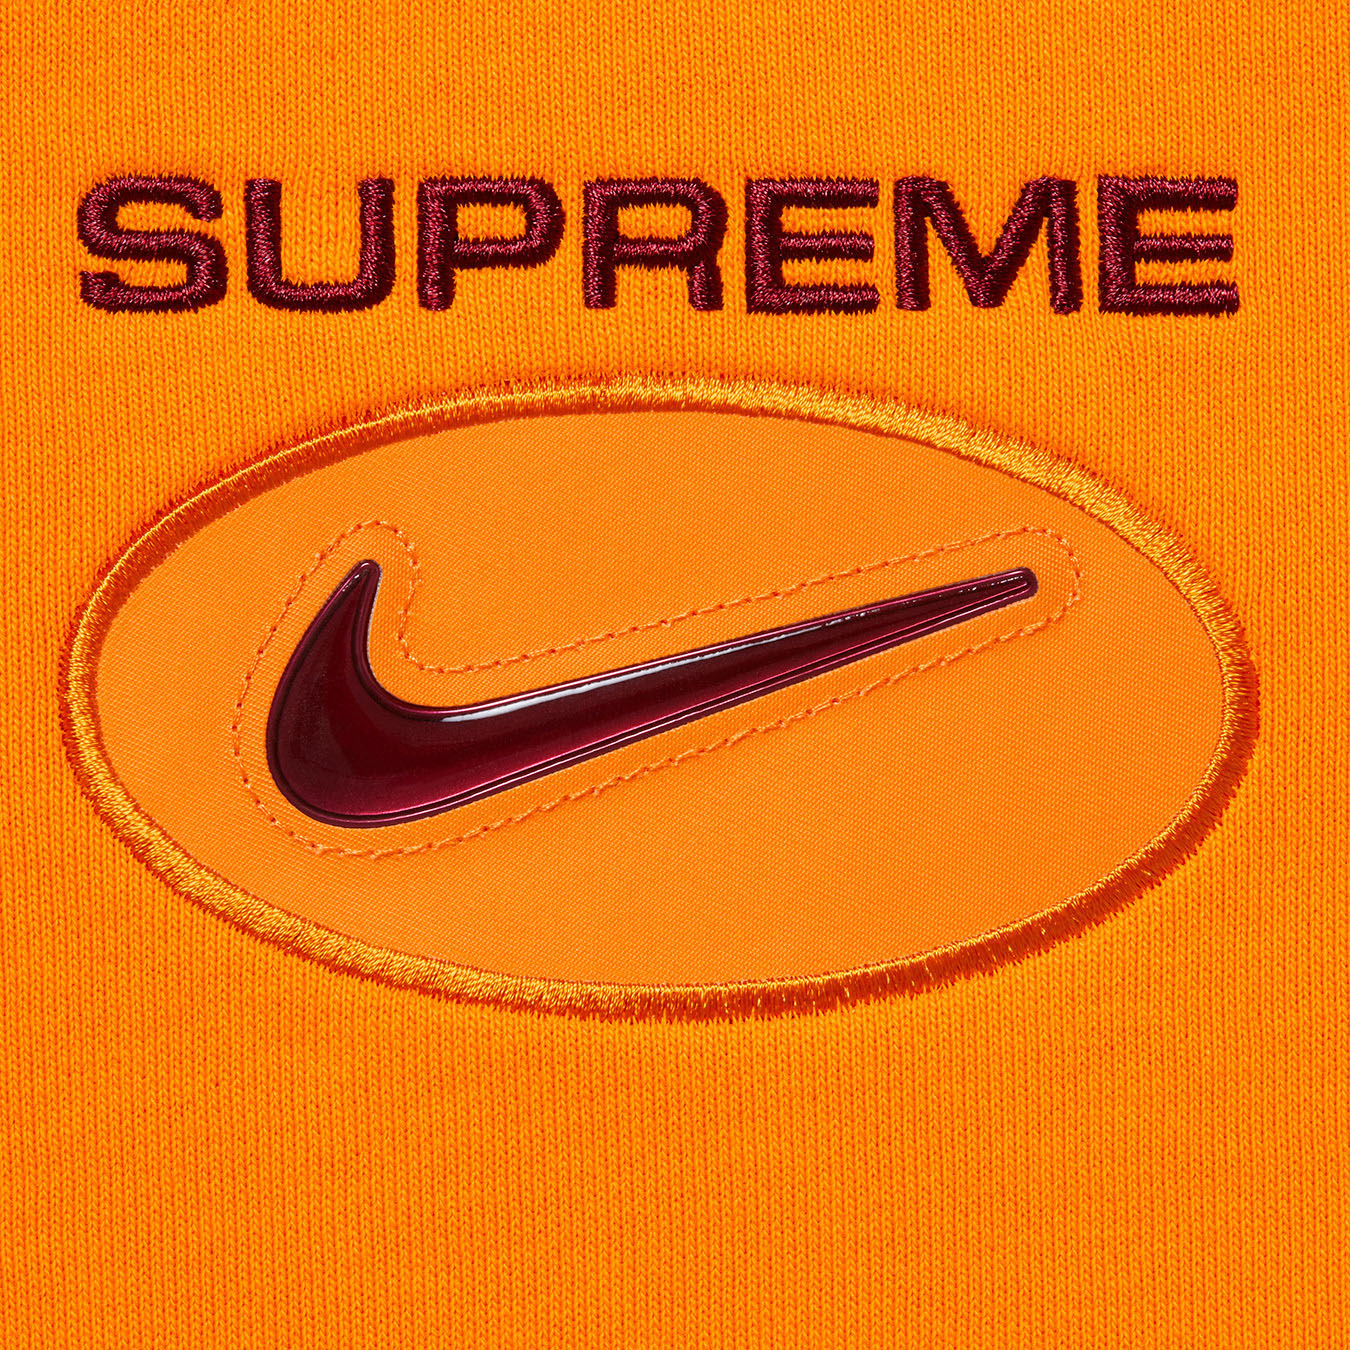 Supreme®/Nike® Jewel Crewneck